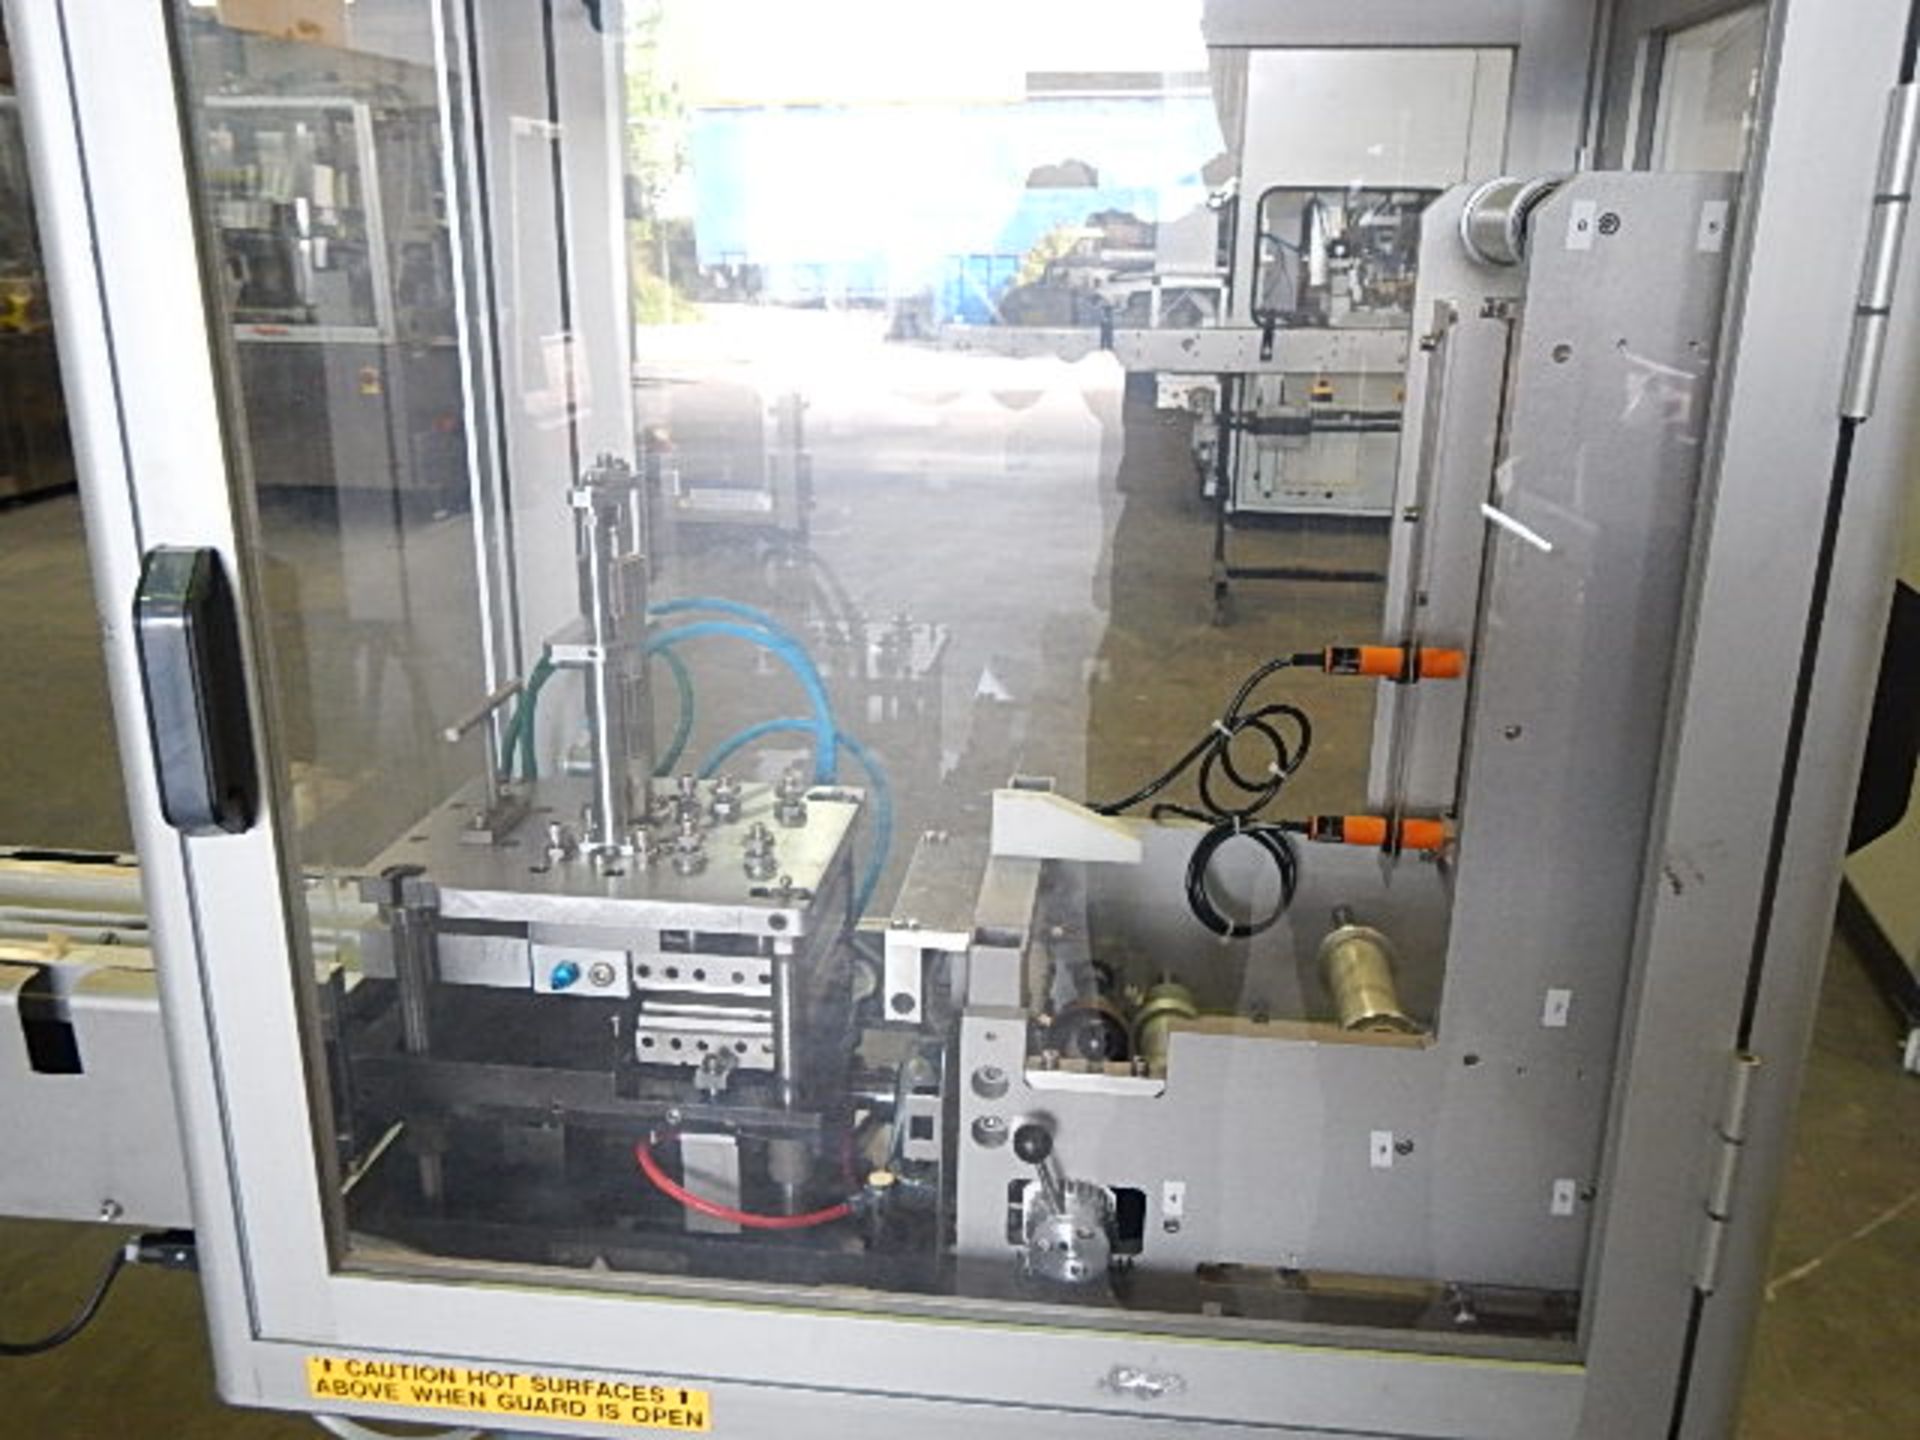 Klockner model EAS 1001 Unit-Dose blister packaging machine designed for pharmaceutical and - Image 19 of 25